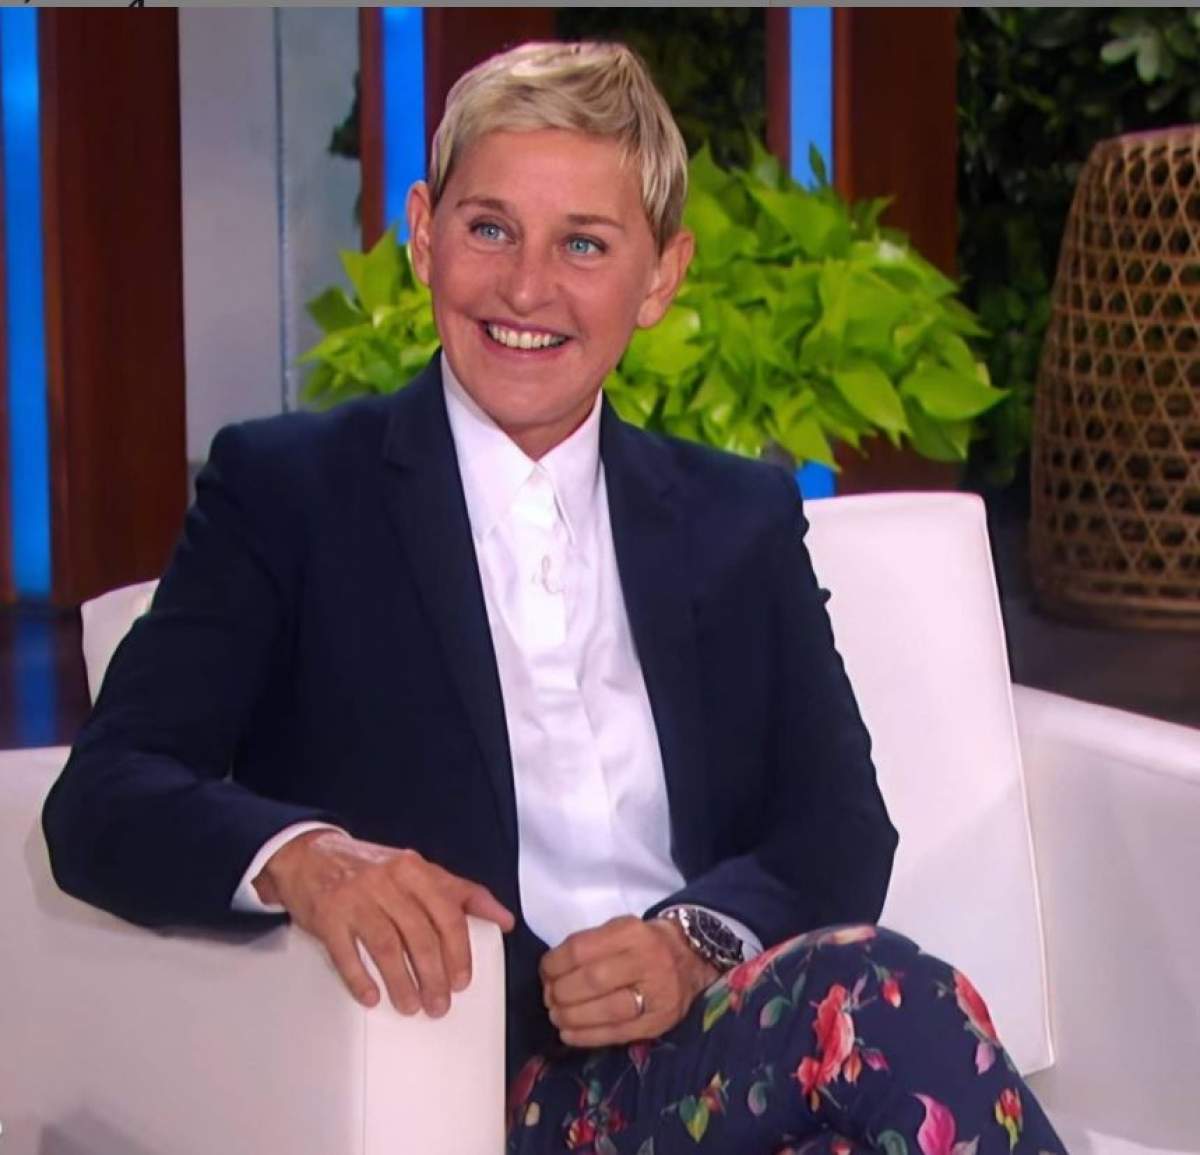 Ellen DeGeneres este pe fotoliu in emisiunea ei, zambeste, are sacou negru si camasa alba